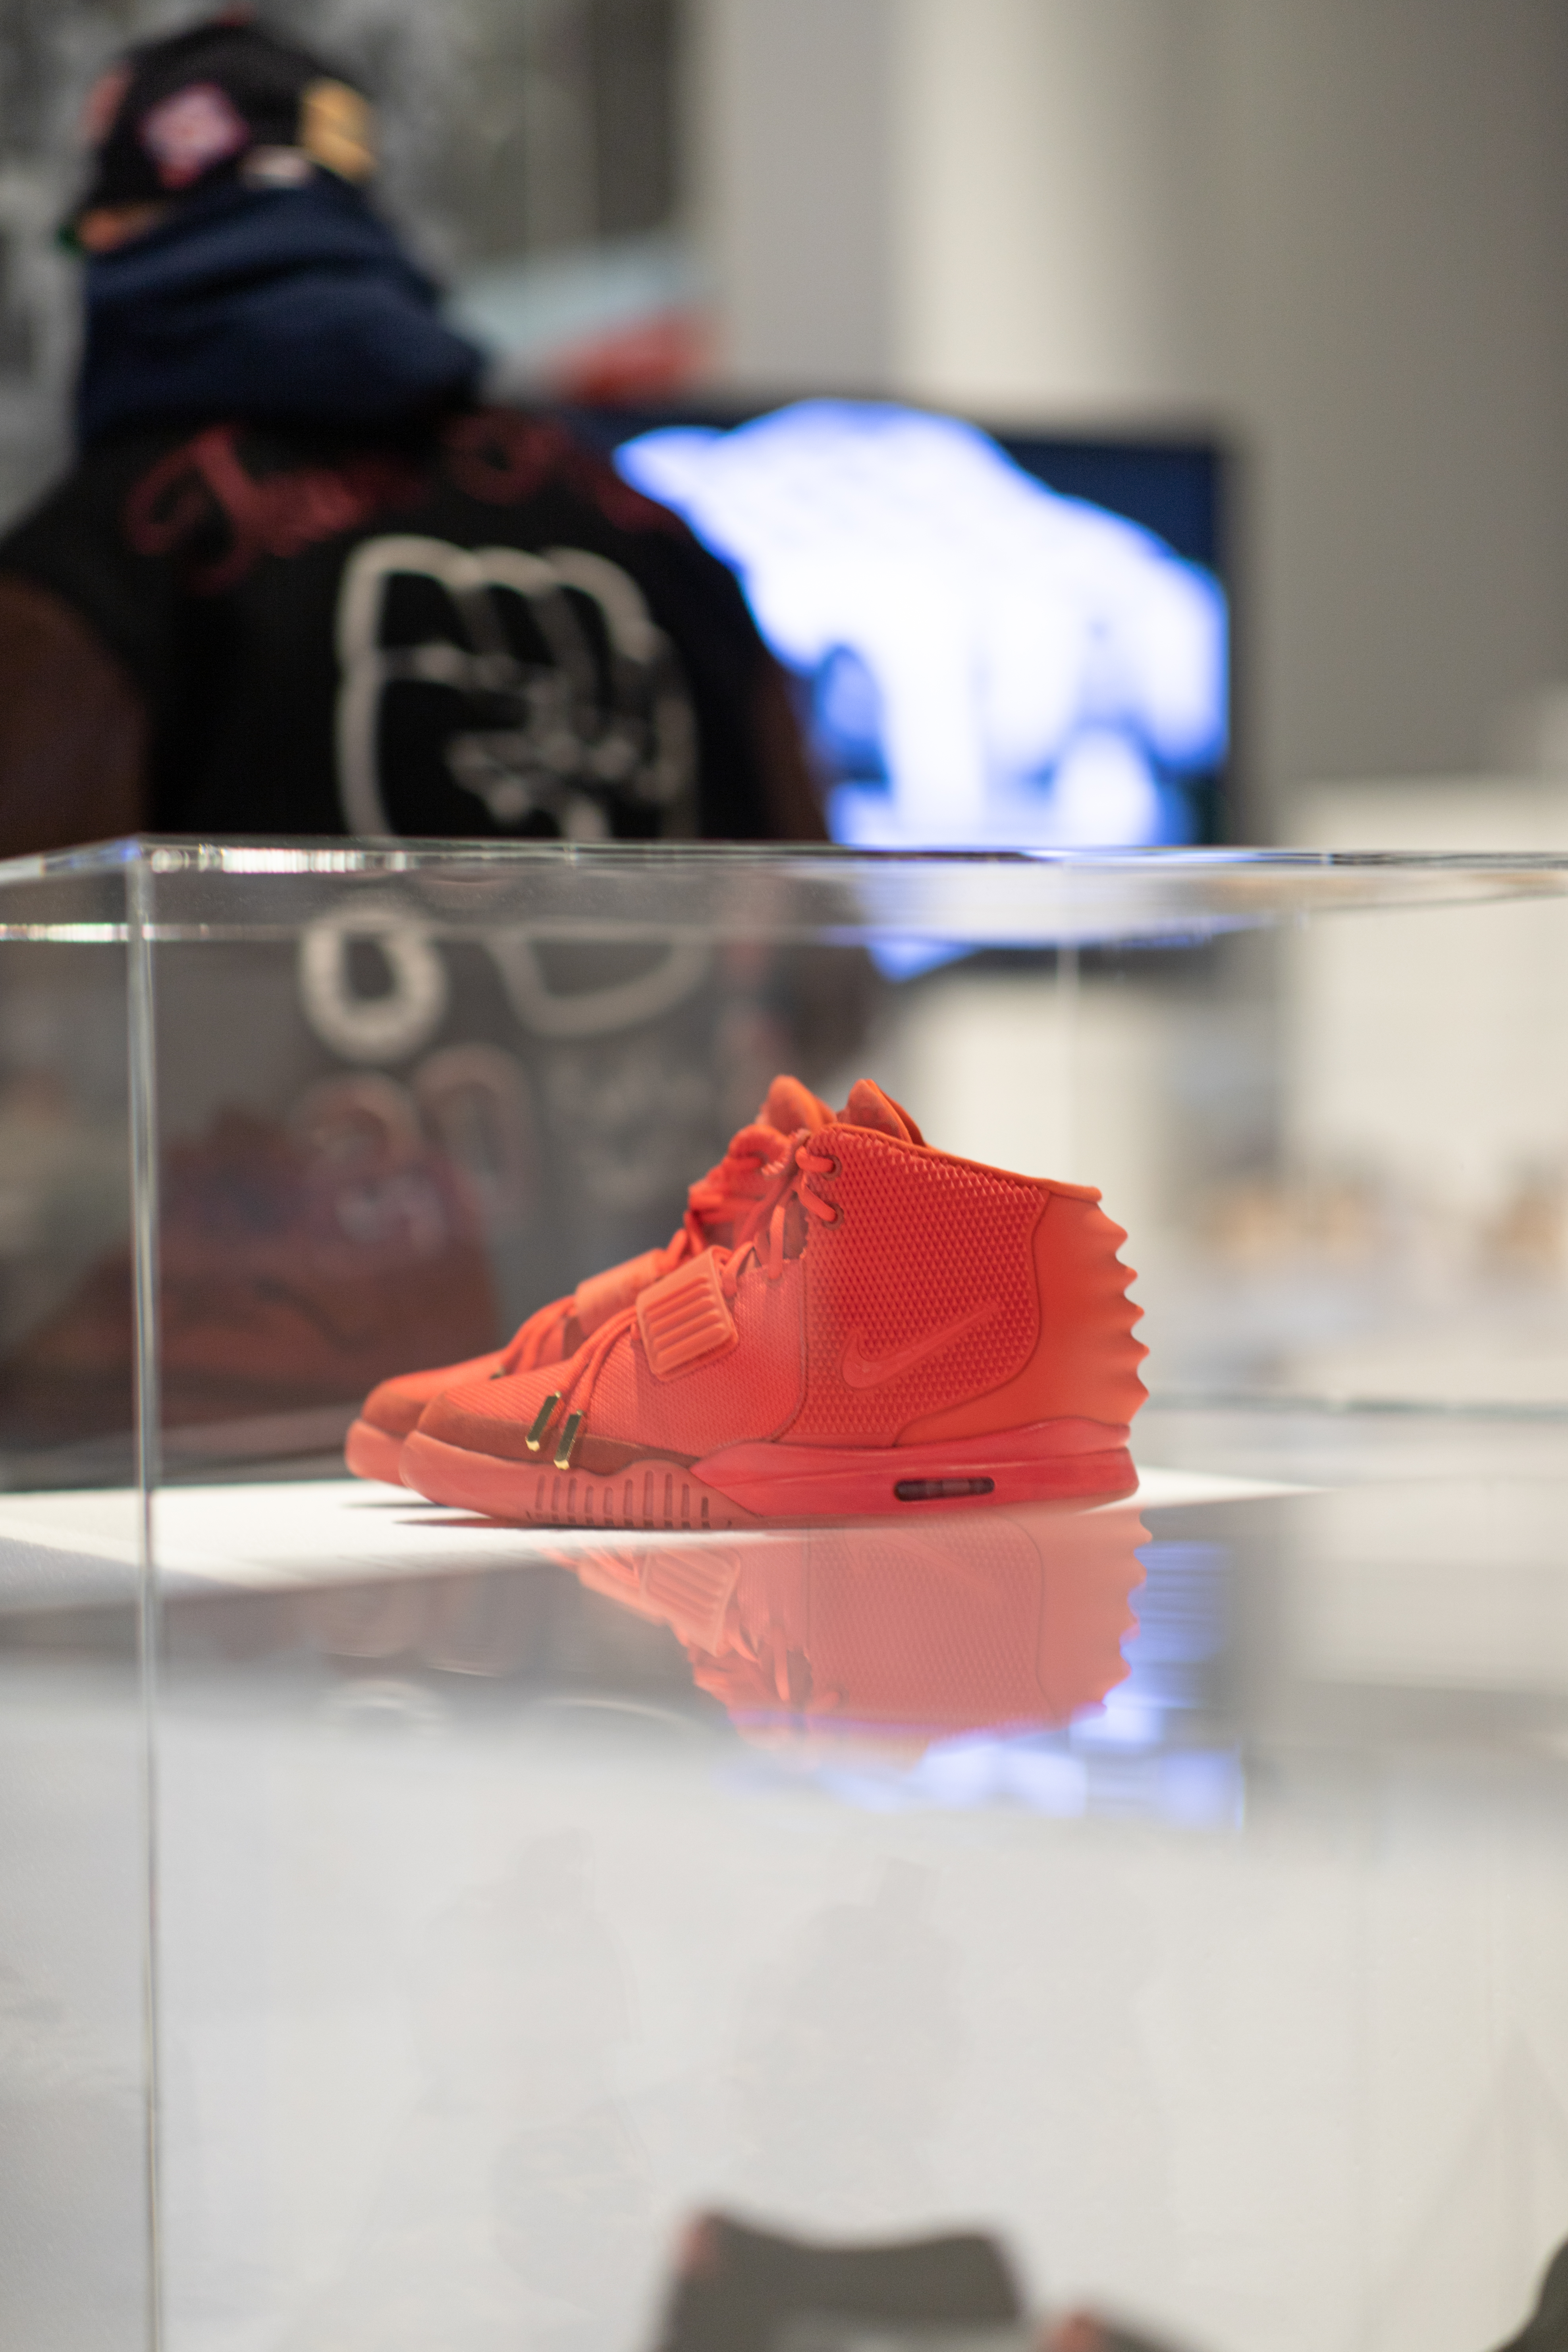 Sneakers Unboxed Design Museum Den Bosch